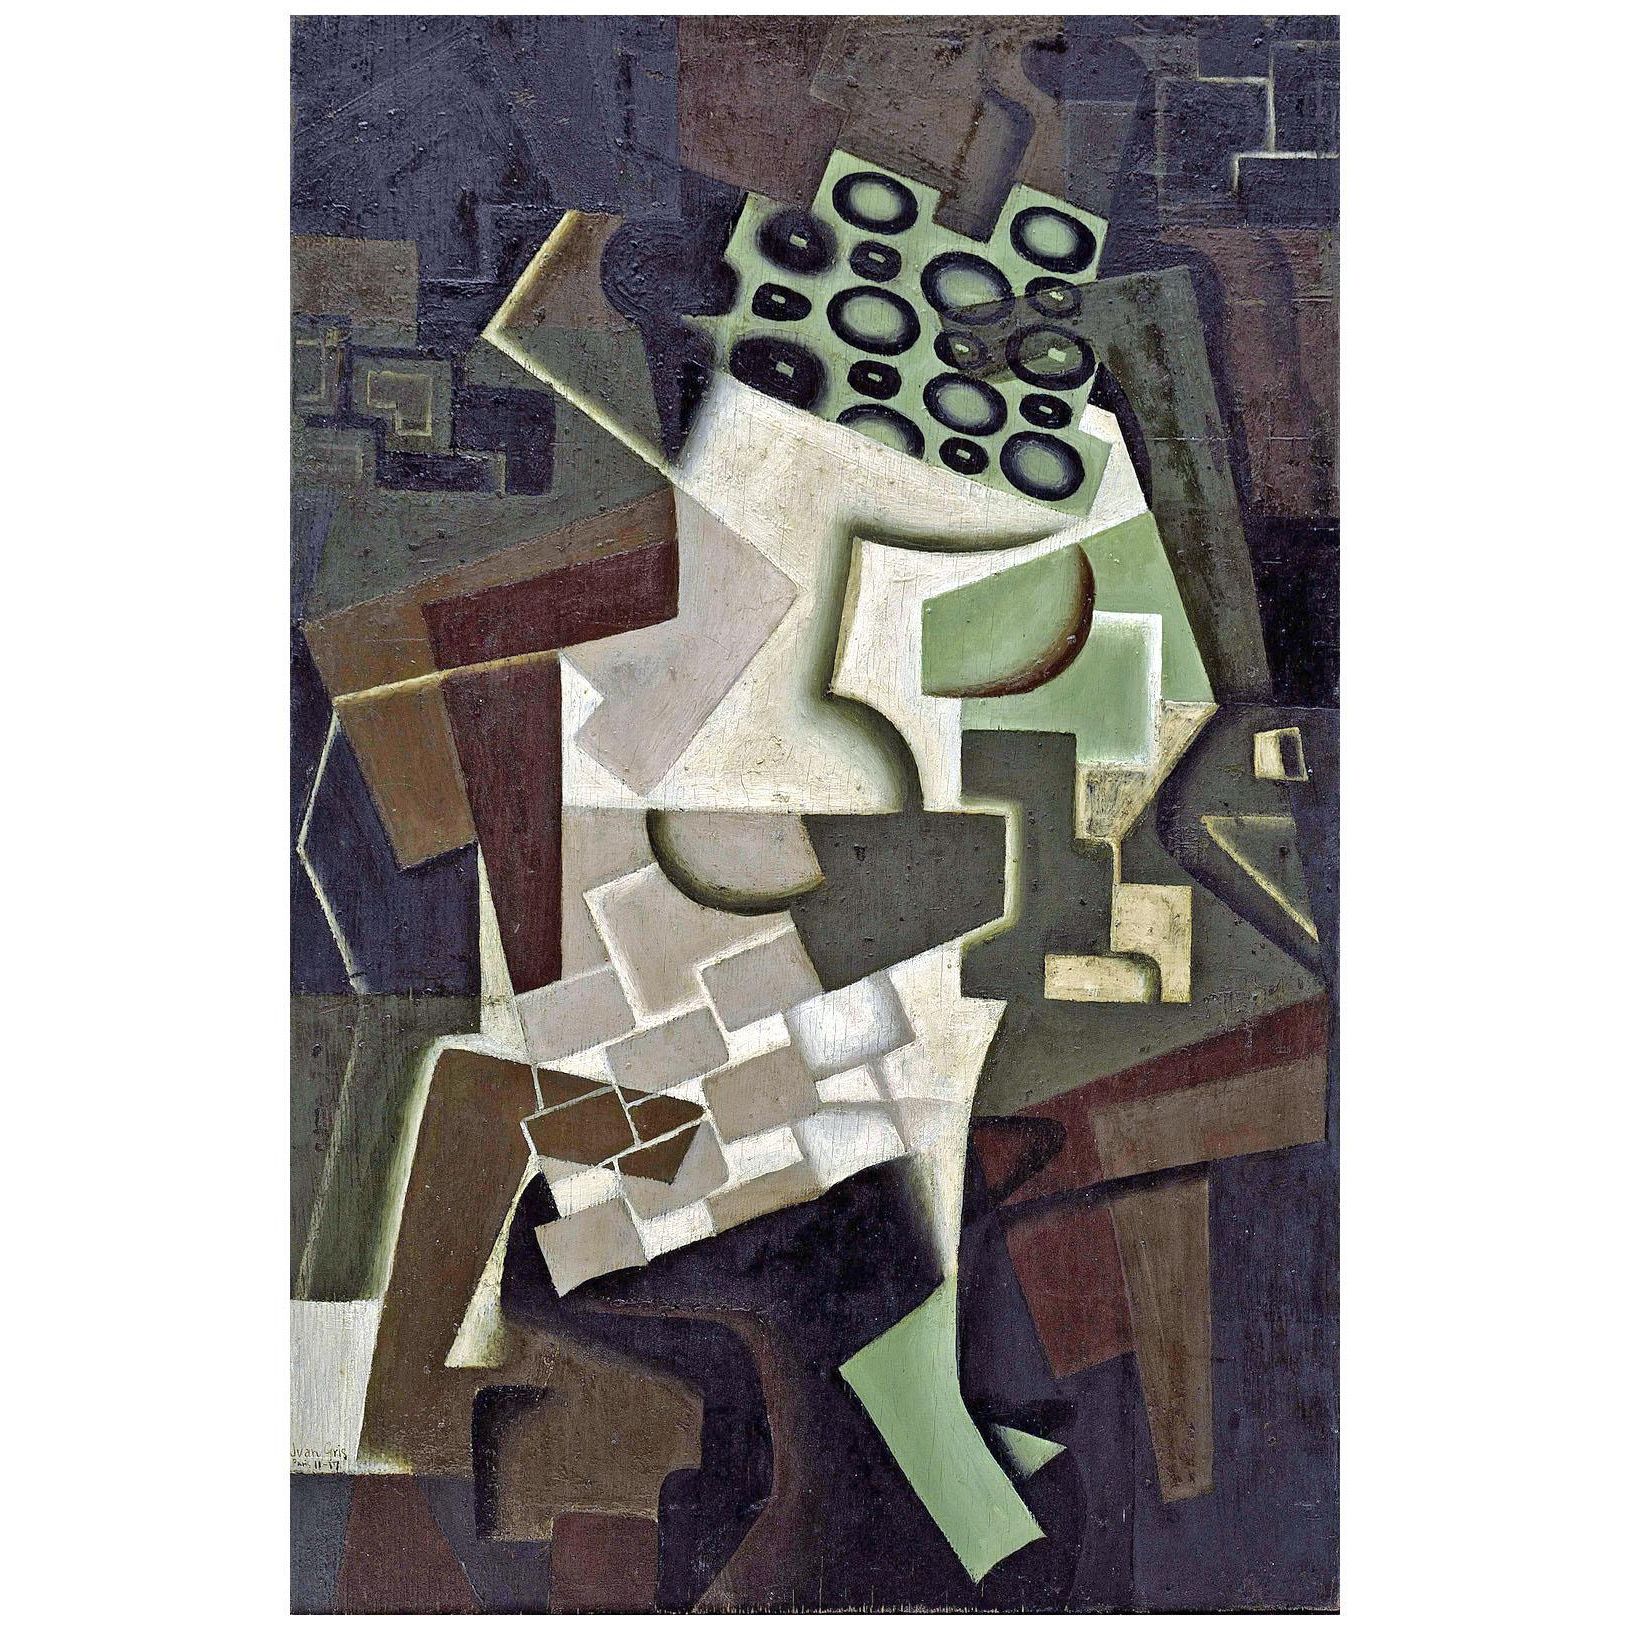 Juan Gris. Compotier et nappe à carreaux. 1917. Guggenheim Museum NY